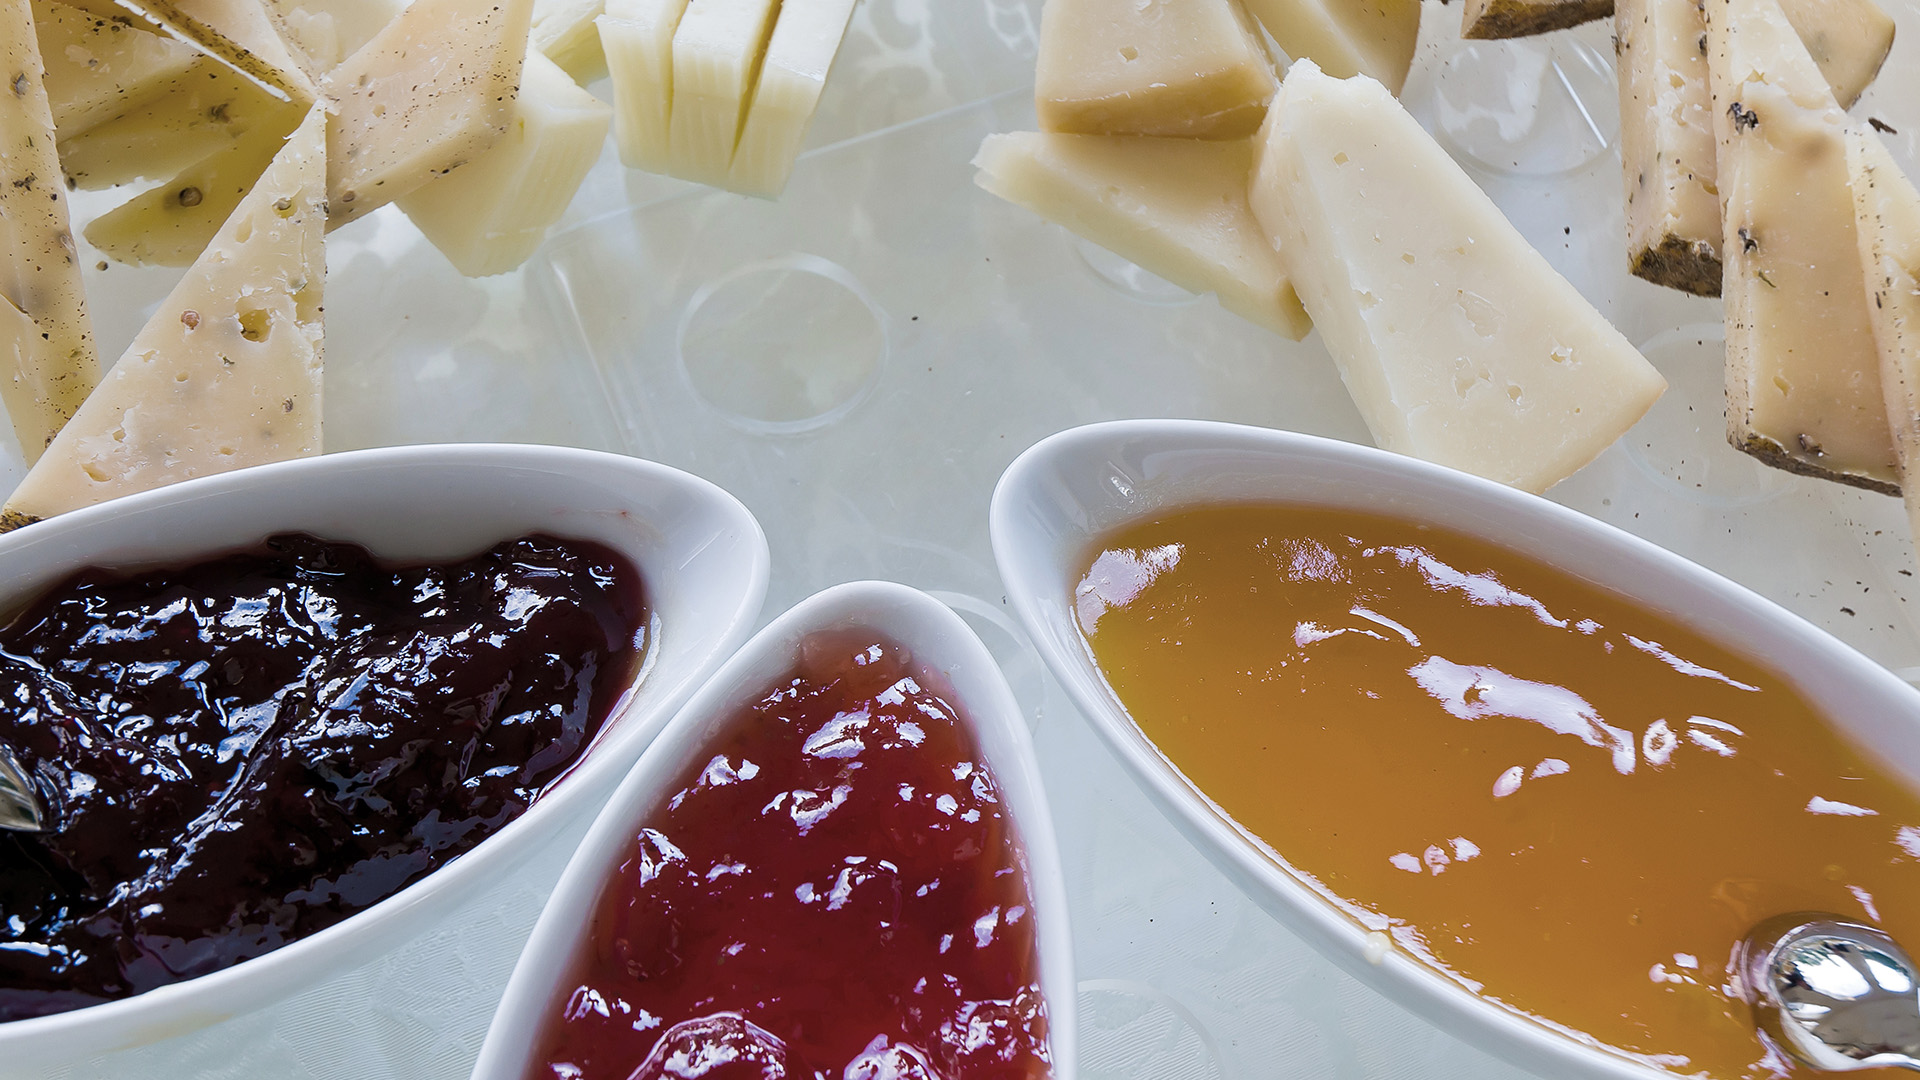 Assaggio di formaggi con confetture della piana dei sapori